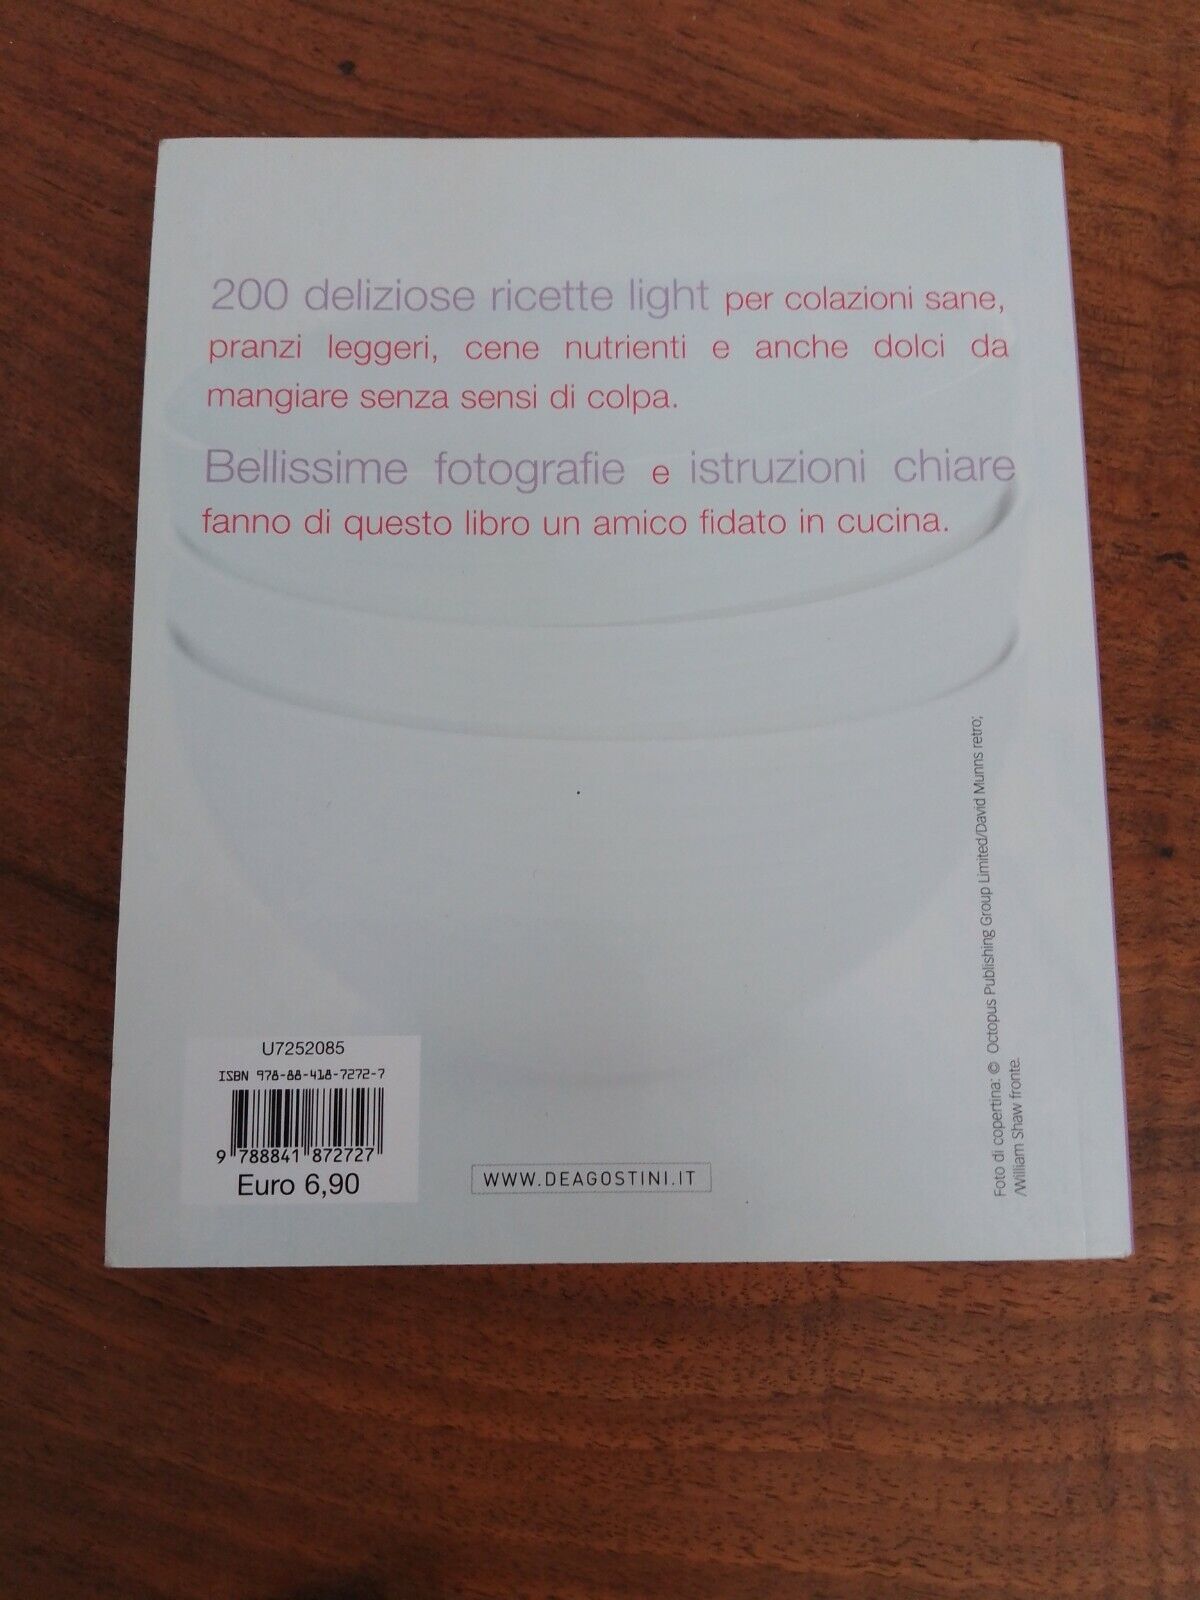 200 ricette light con il calcolo delle calorie per porzione, DeAgostini, 2012